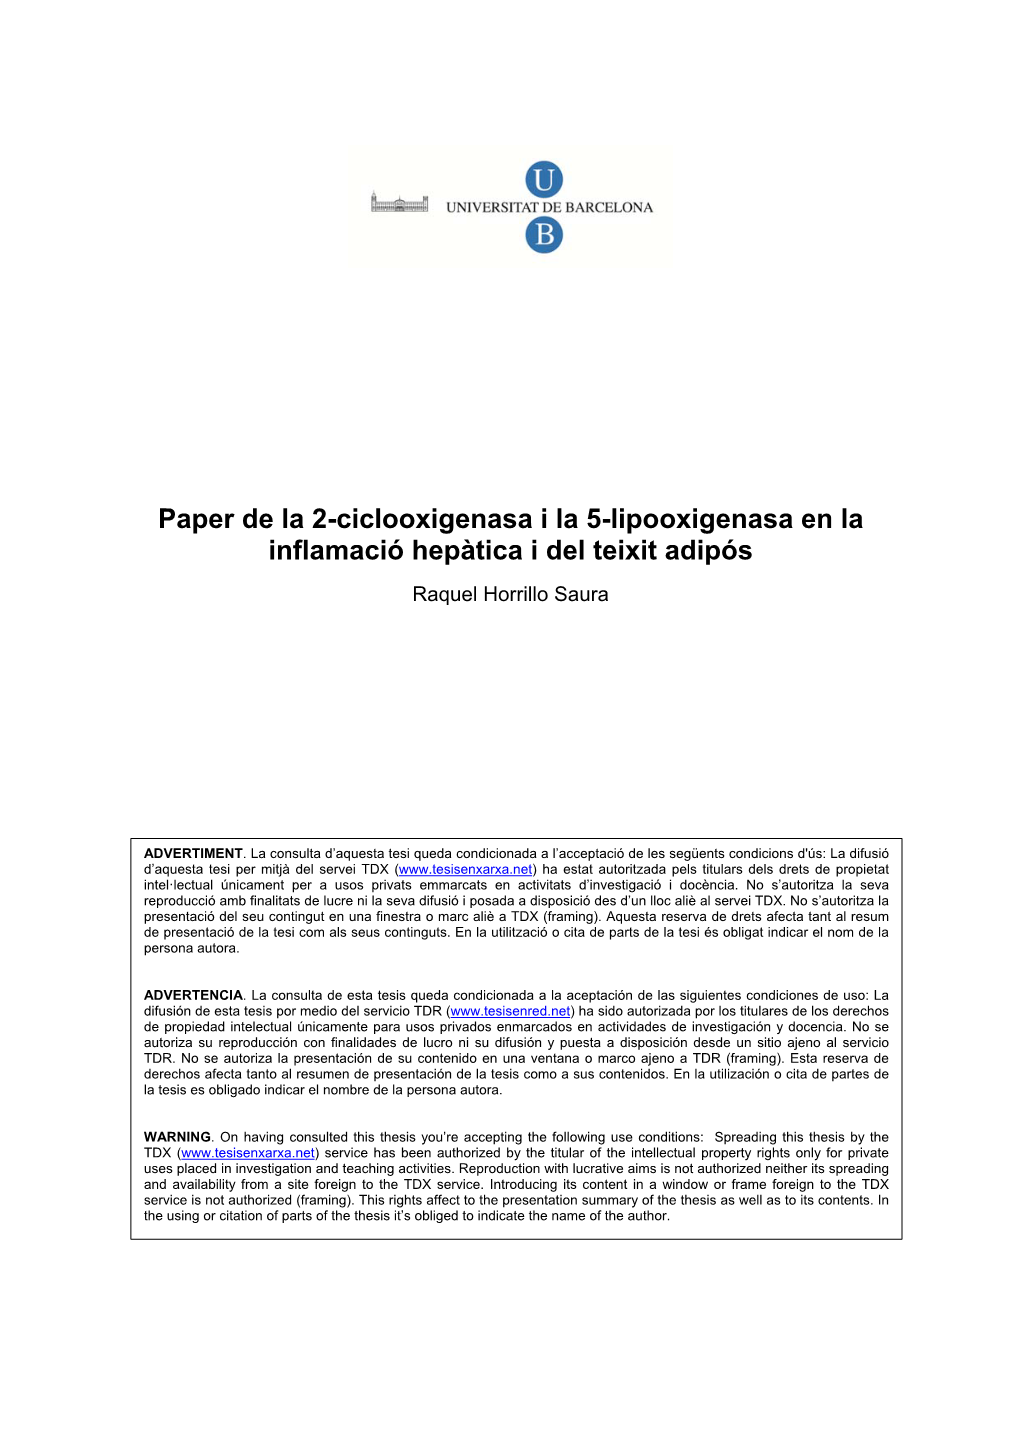 Paper De La 2-Ciclooxigenasa I La 5-Lipooxigenasa En La Inflamació Hepàtica I Del Teixit Adipós